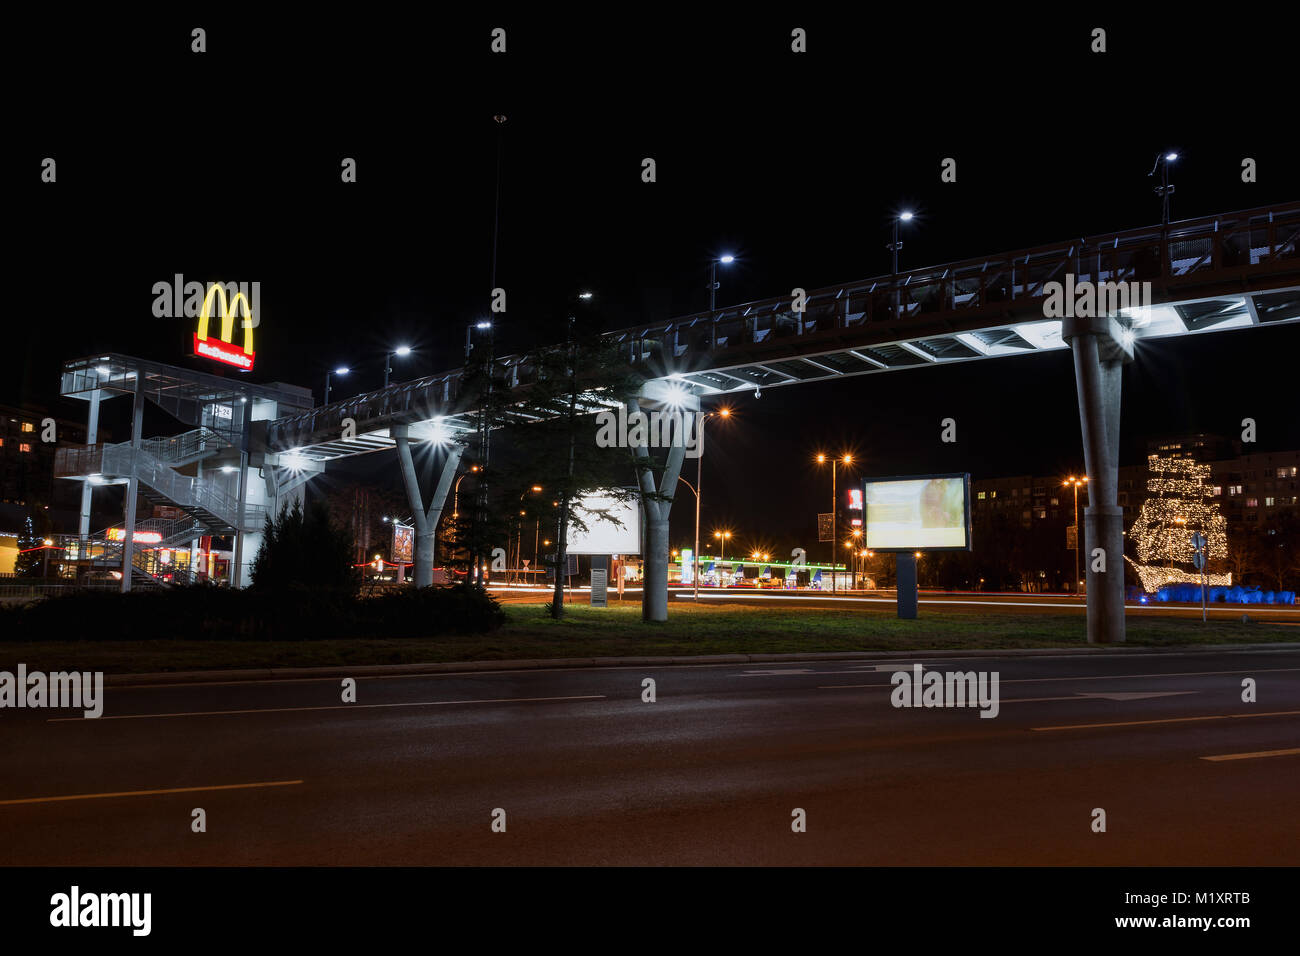 BURGAS, BULGARIE - Février 1, 2018 : le pont piétonnier au-dessus de nuit. Logo du restaurant McDonald. Banque D'Images